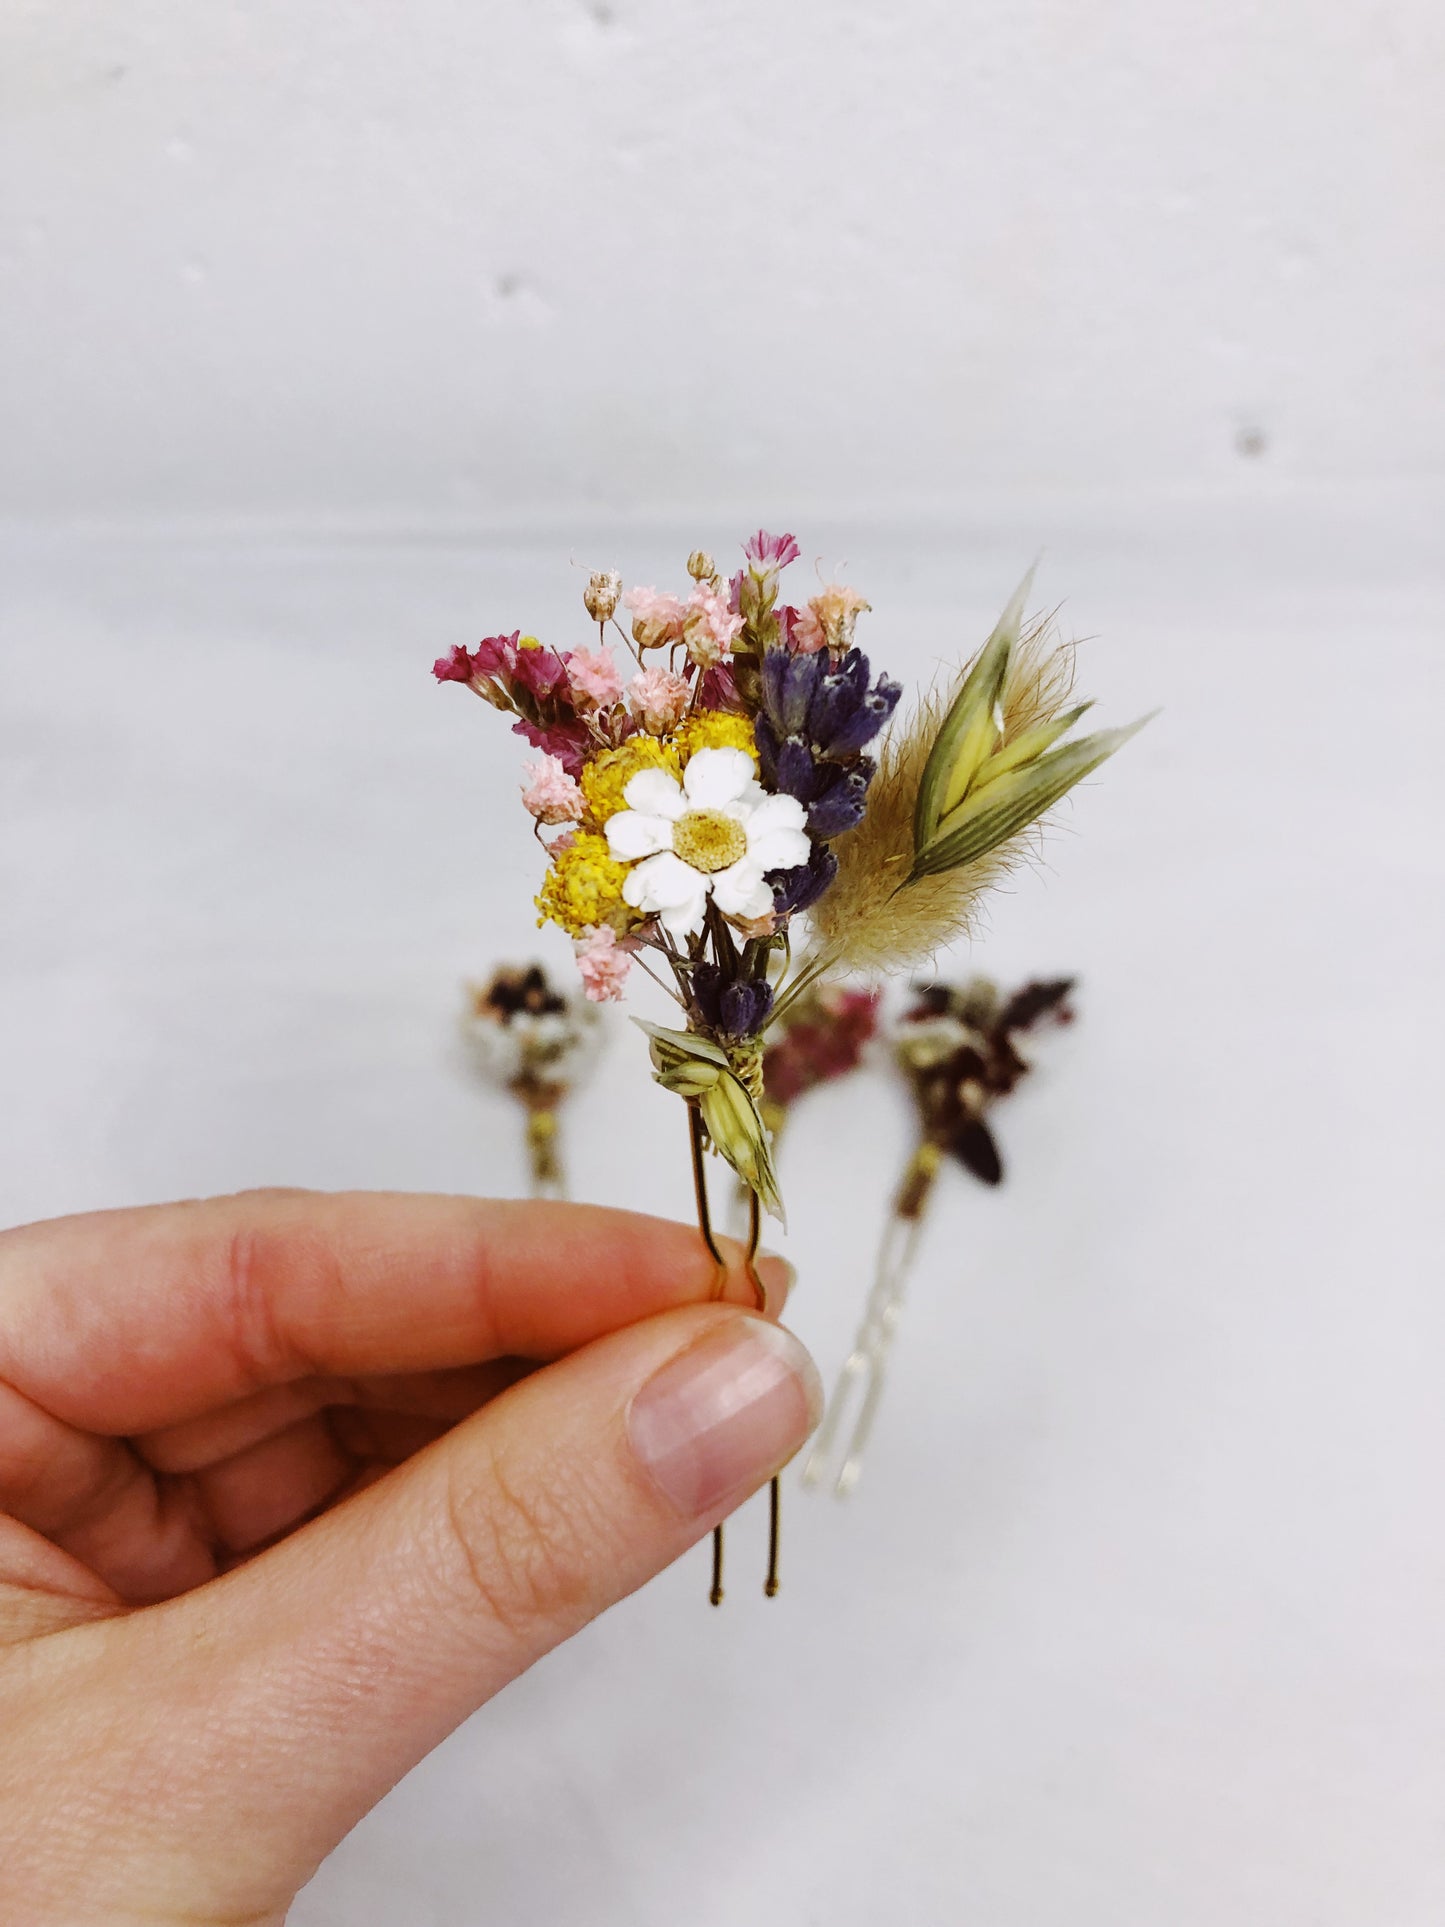 Haarnadeln aus echten getrockneten Blumen - 4 Farboptionen